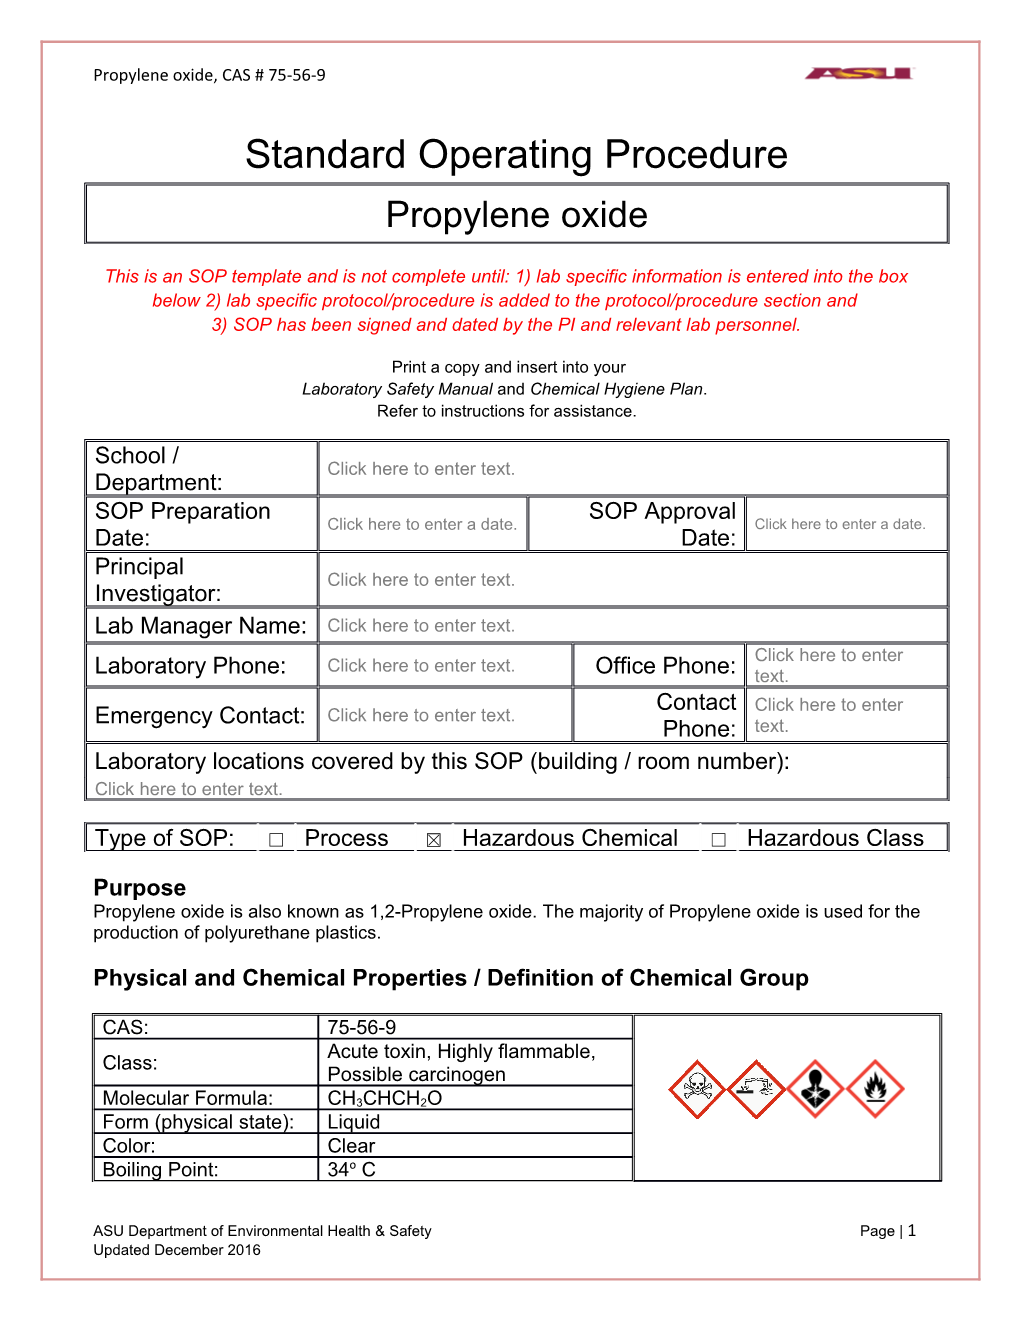 Propylene Oxide, CAS # 75-56-9